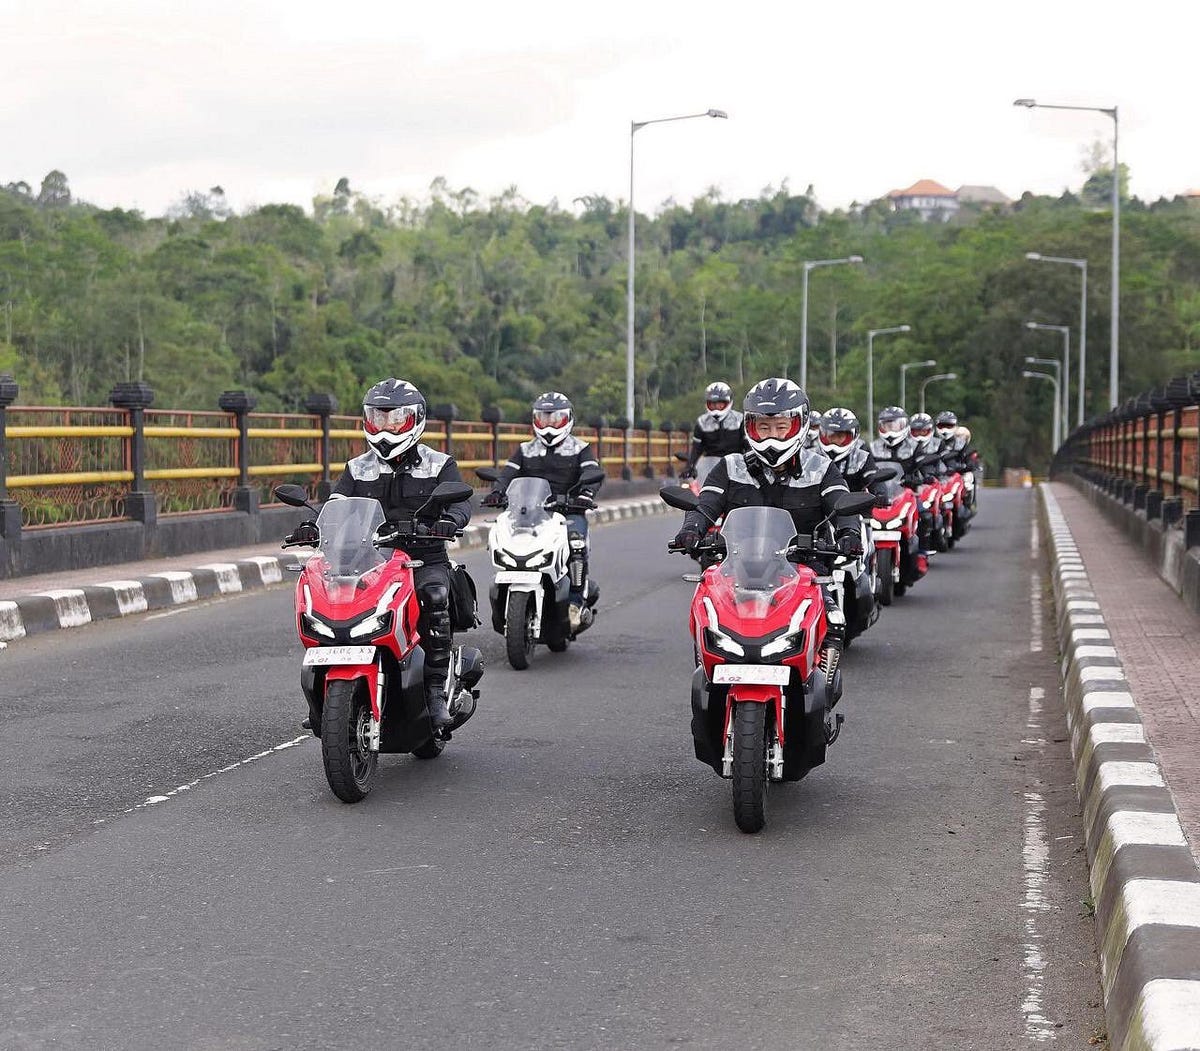 Why Honda Adv 150 Worldwide Premiere Test Ride In Bali Again By Adiyasa Prahenda Medium